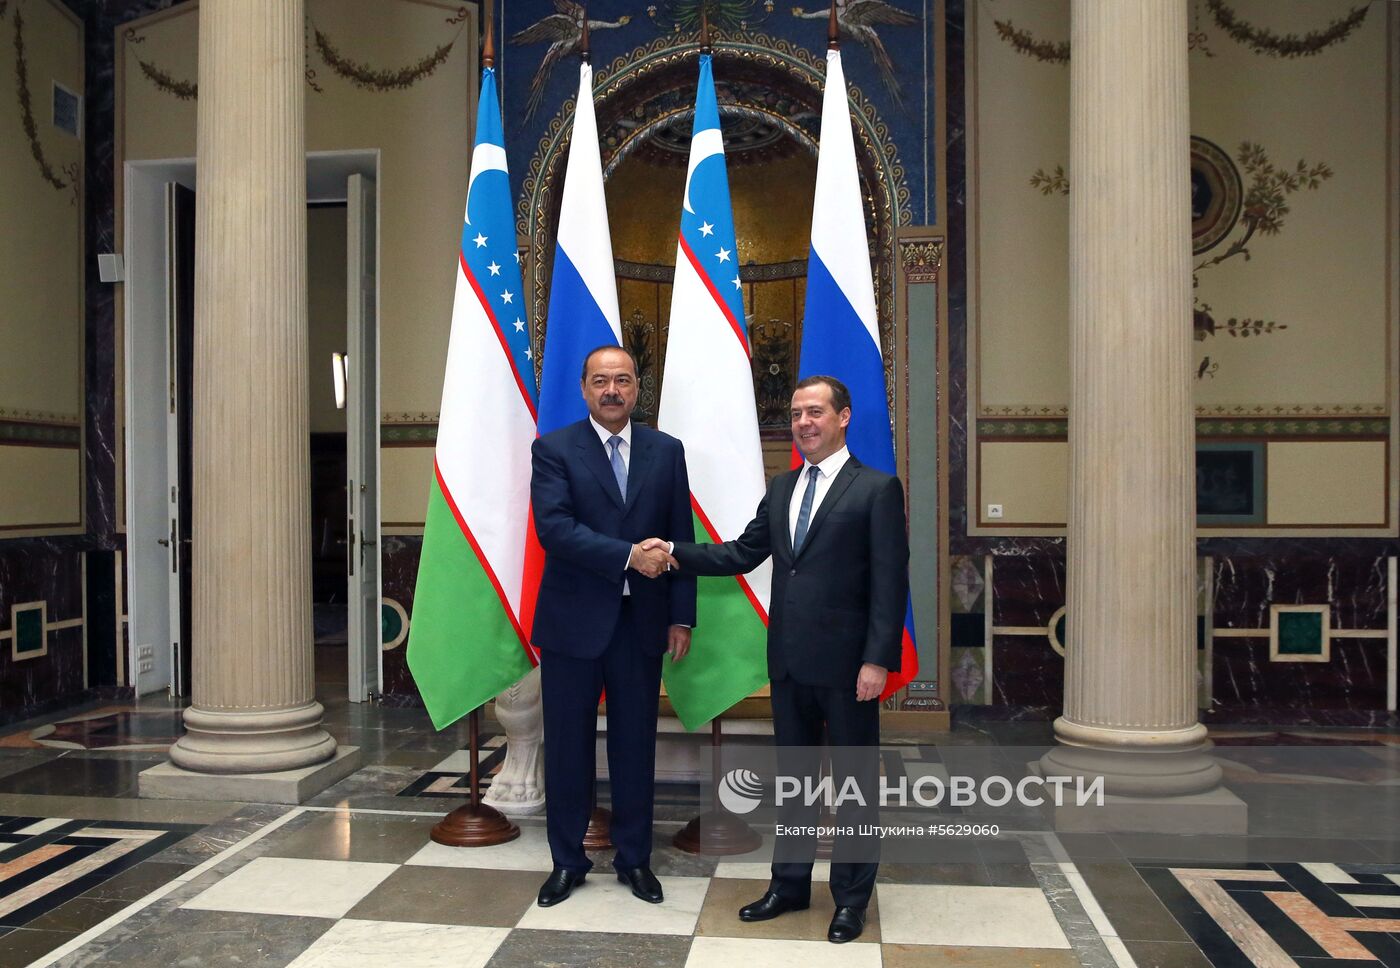  Премьер-министр РФ Д. Медведев встретился с премьер-министром Узбекистана А. Ариповым 